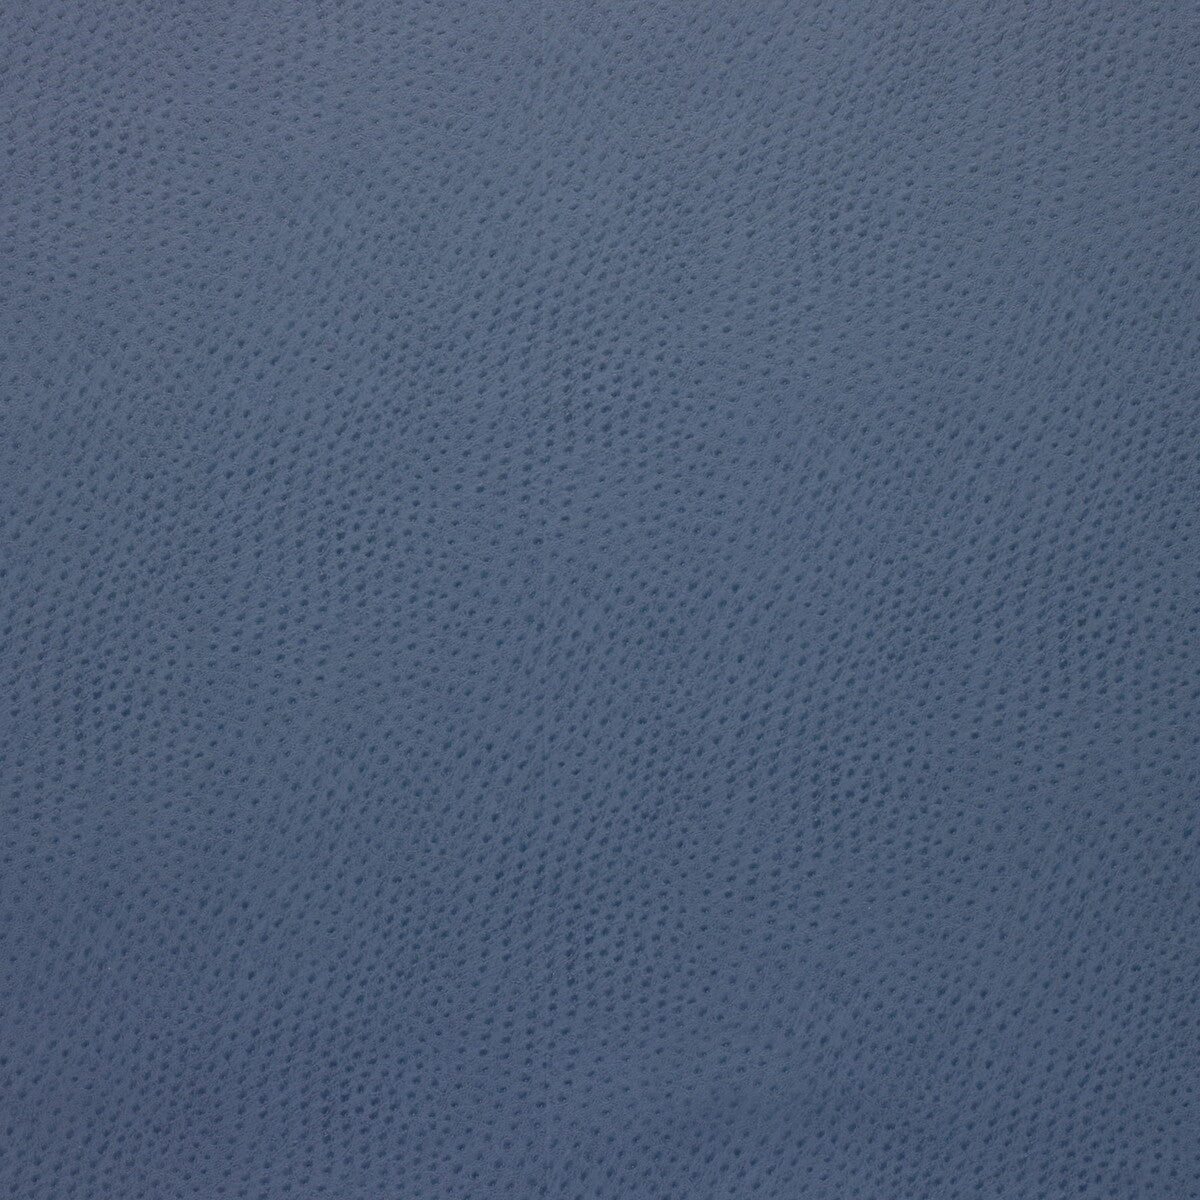 Kravet Design fabric in delaney-5 color - pattern DELANEY.5.0 - by Kravet Design